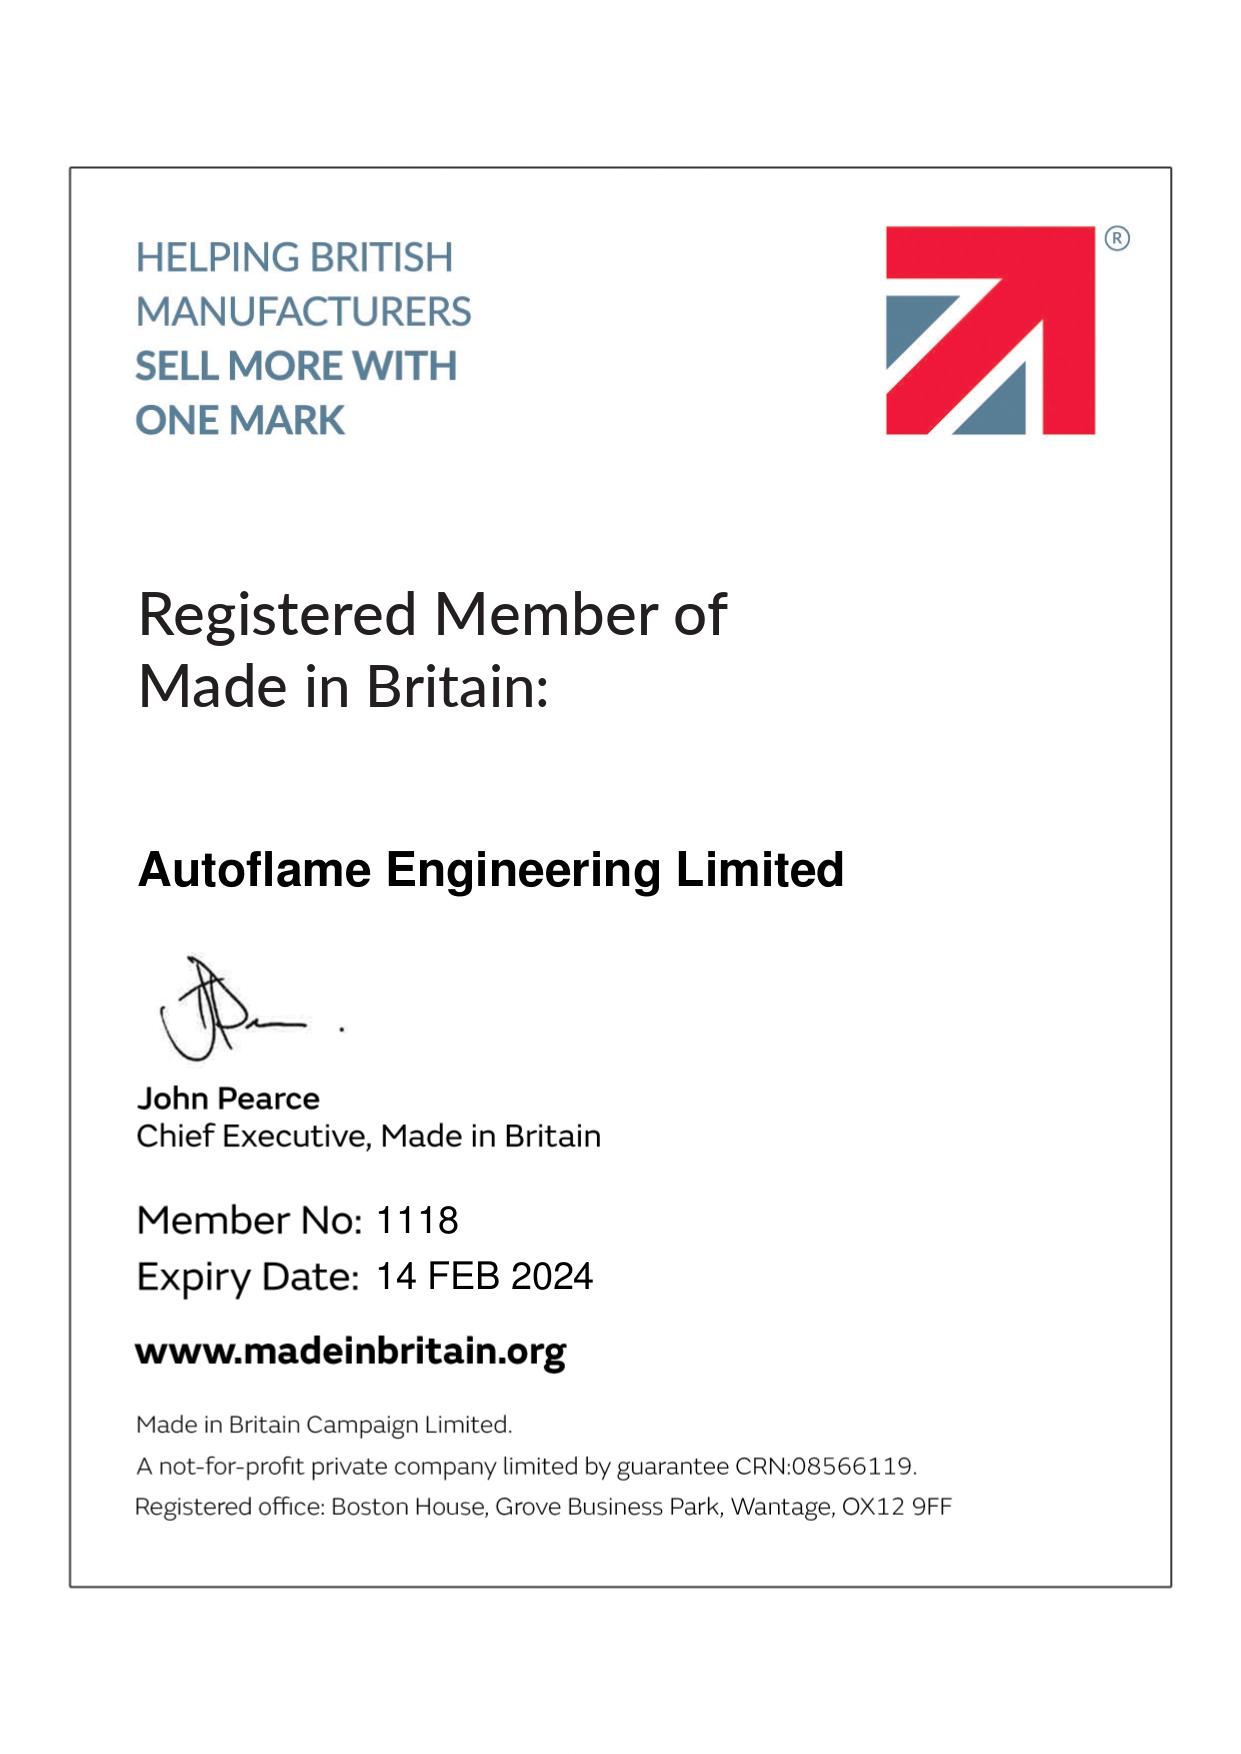 Made in Britain member certificate